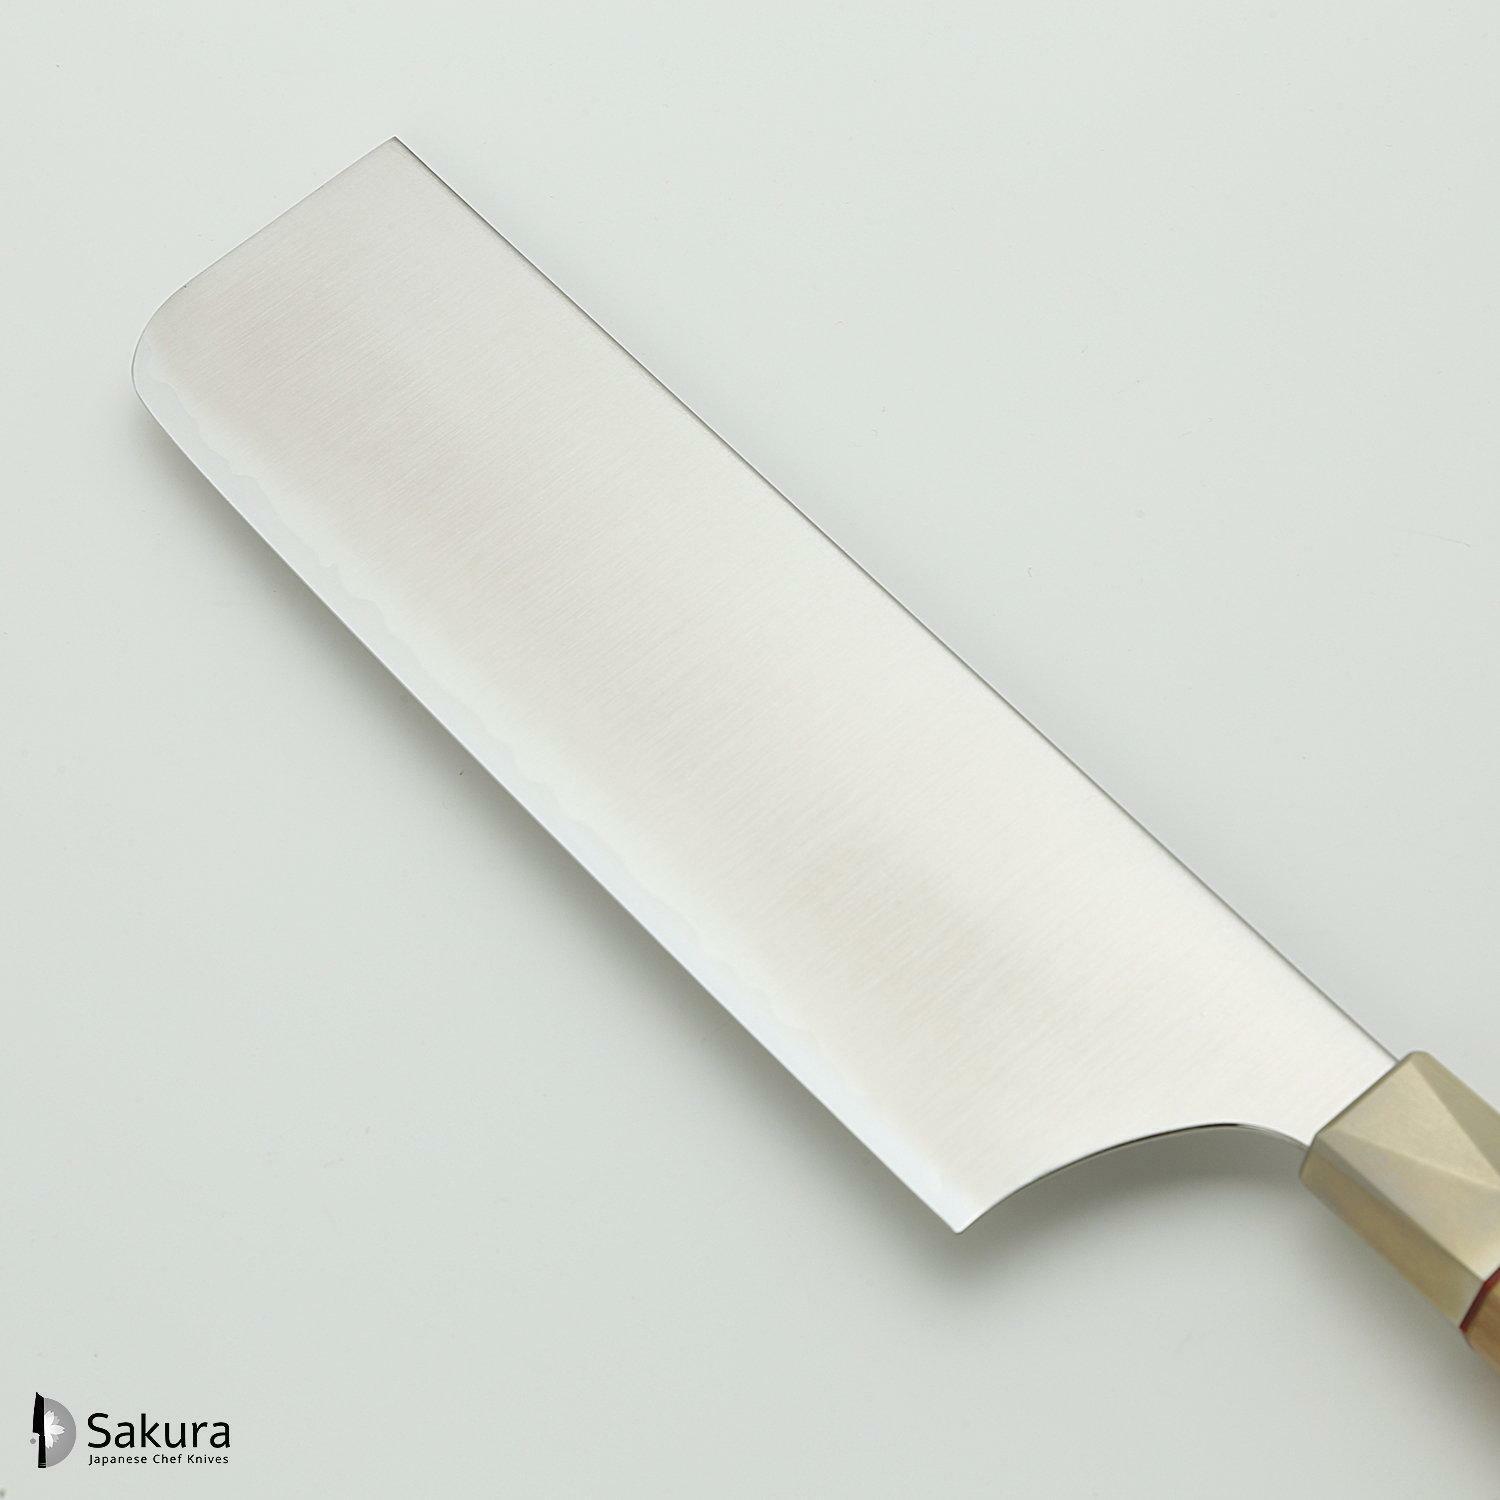 סכין ירקות נַקִירִי 165מ״מ מחושלת בעבודת יד 3 שכבות: פלדת פחמן יפנית מתקדמת מסוג Aogami Super עטופה פלדת אל-חלד גימור מט מלוטש מקוסטה זאנמאיי יפן ZBX-5008B